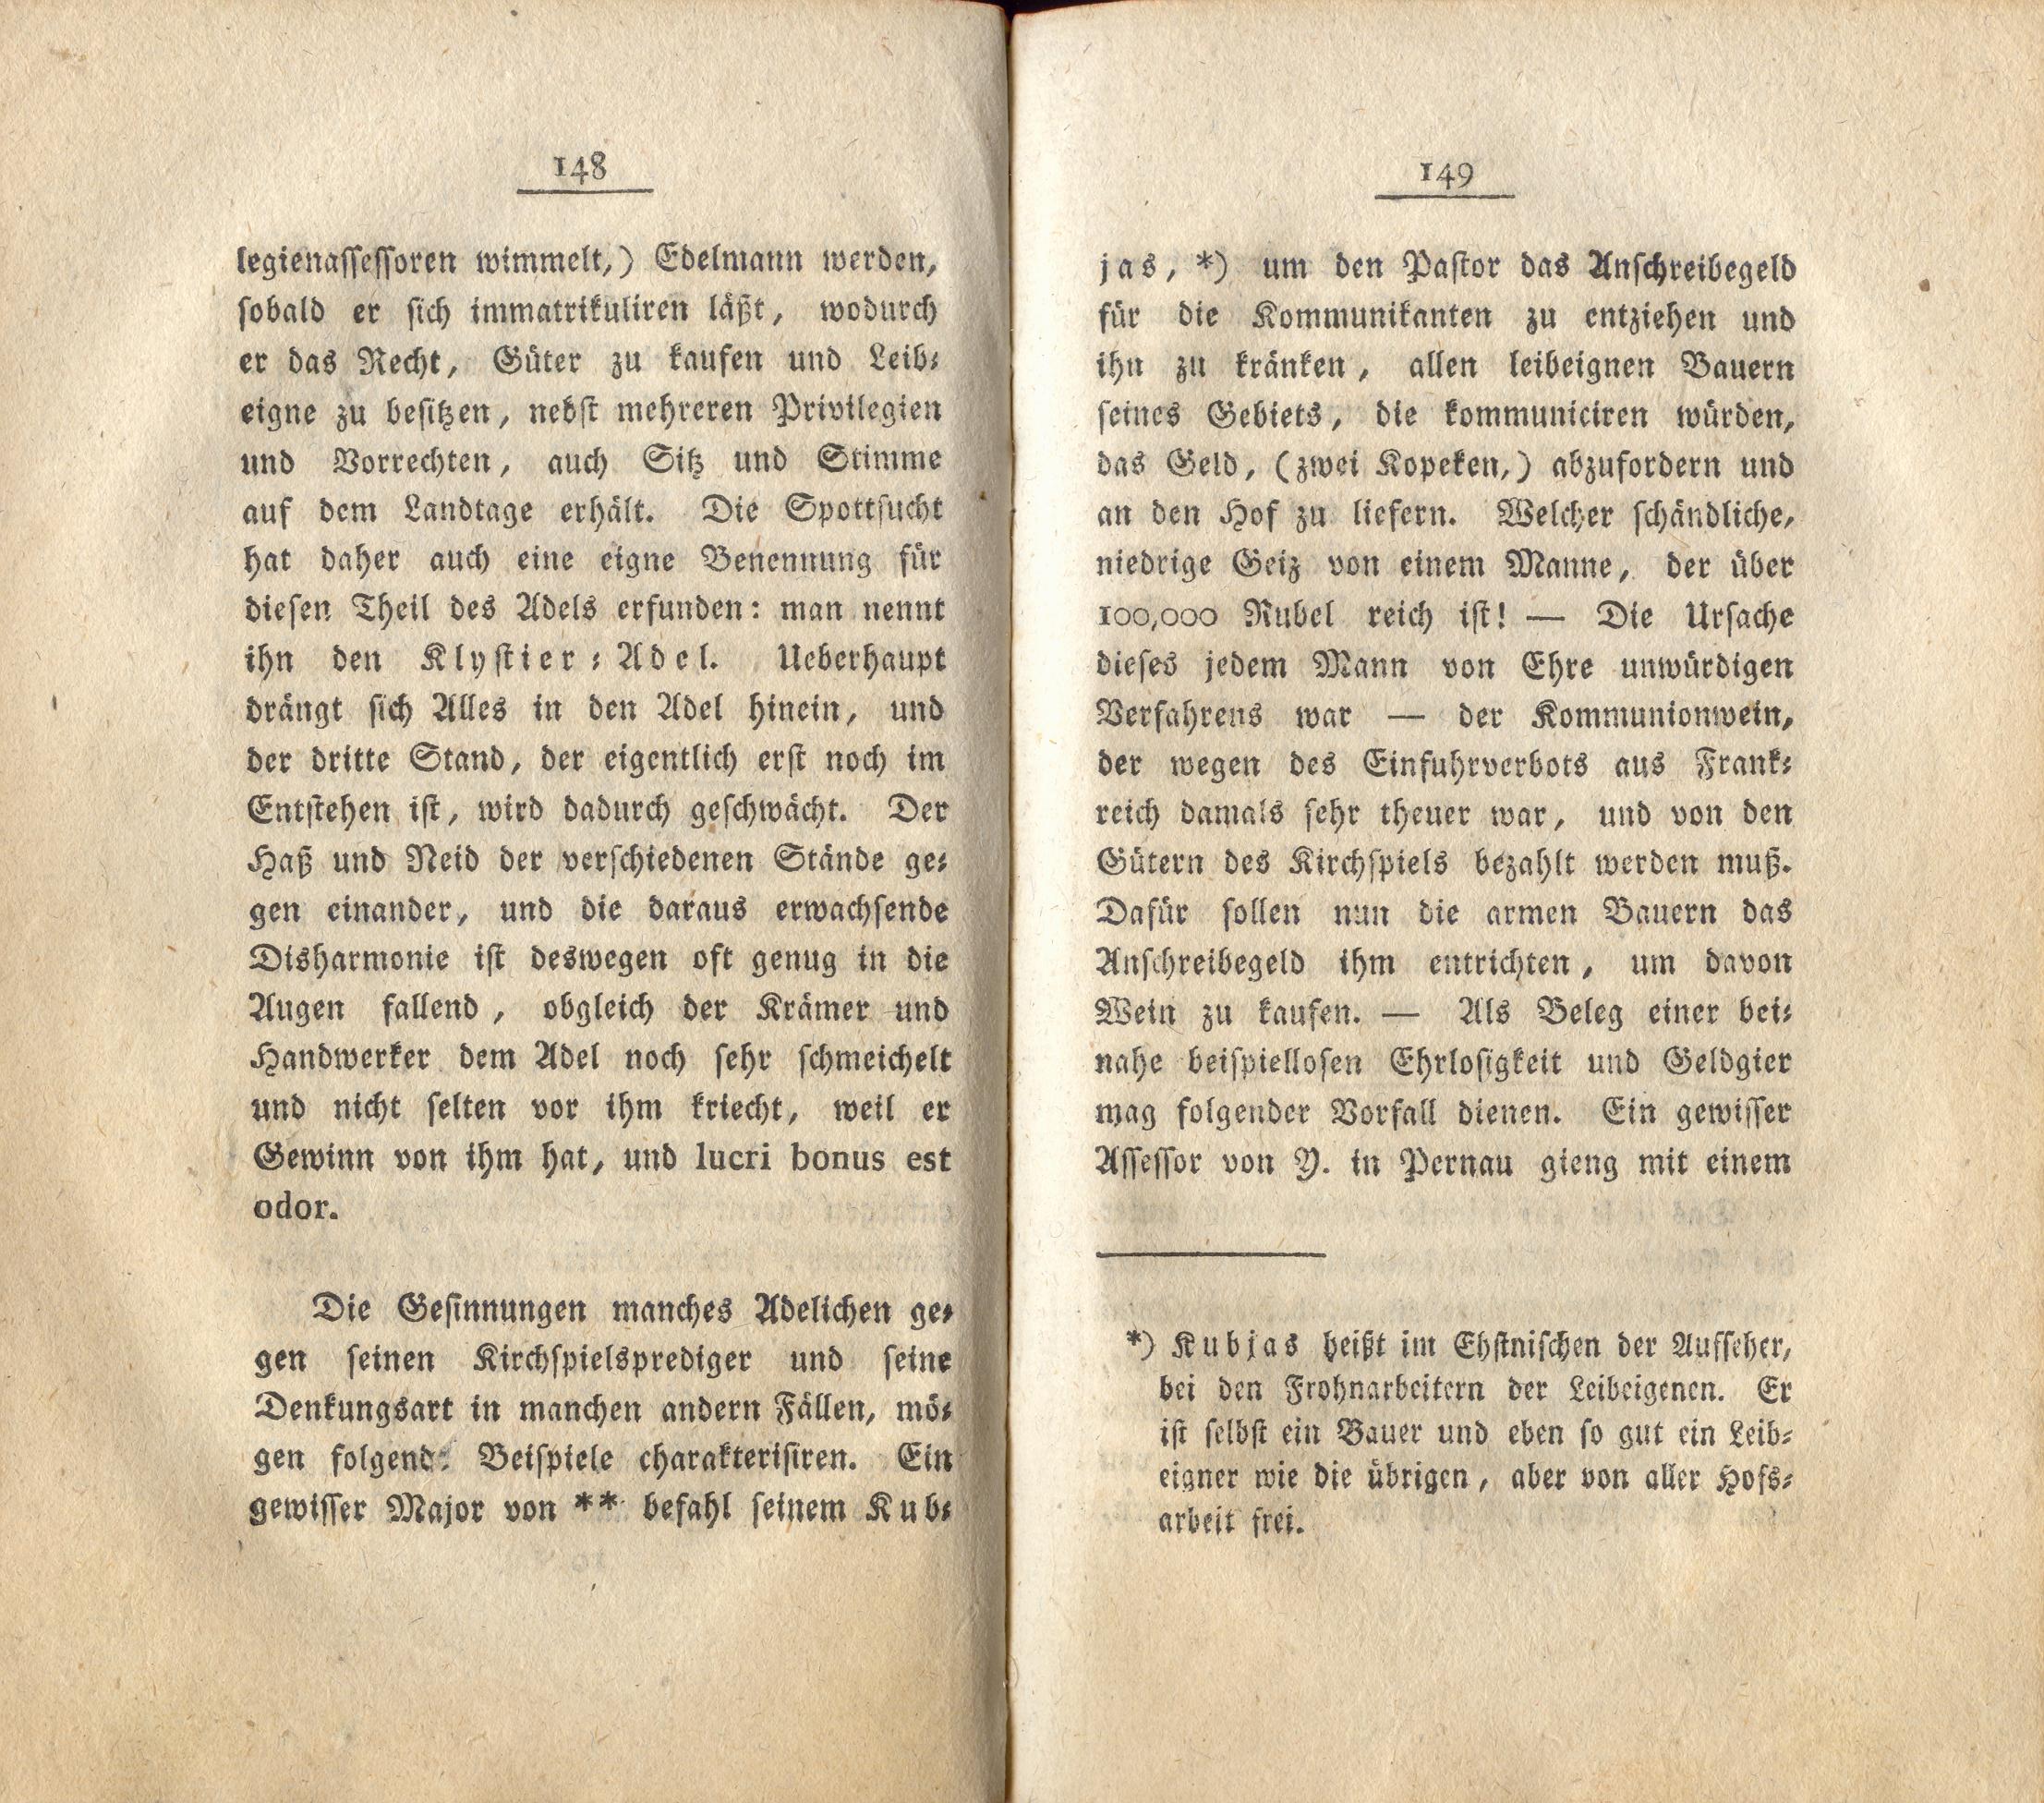 Neue Pittoresken aus Norden (1805) | 81. (148-149) Main body of text